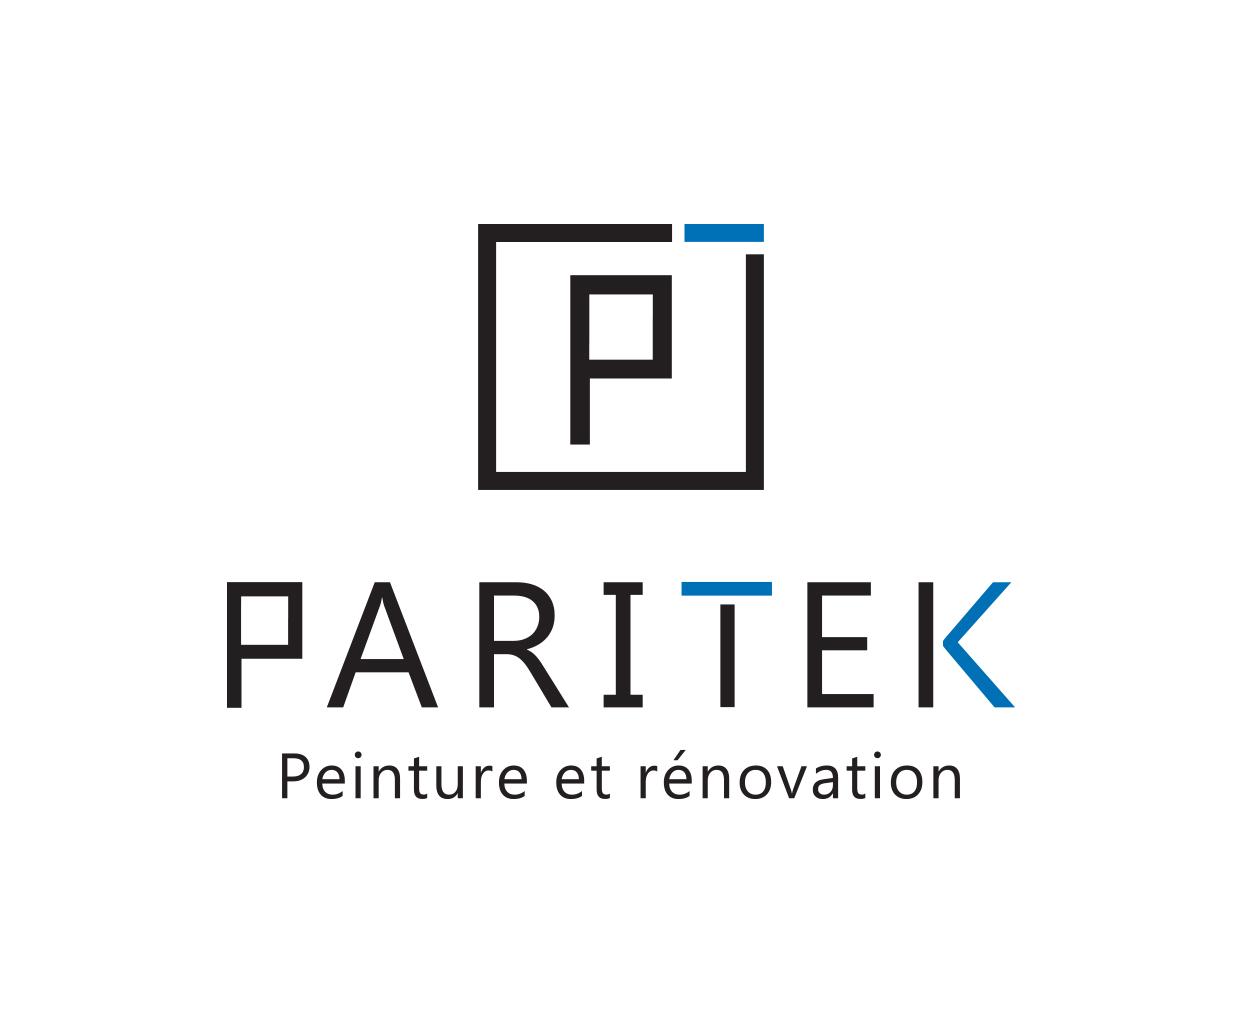 Peinture Et Rénovation Paritek inc.